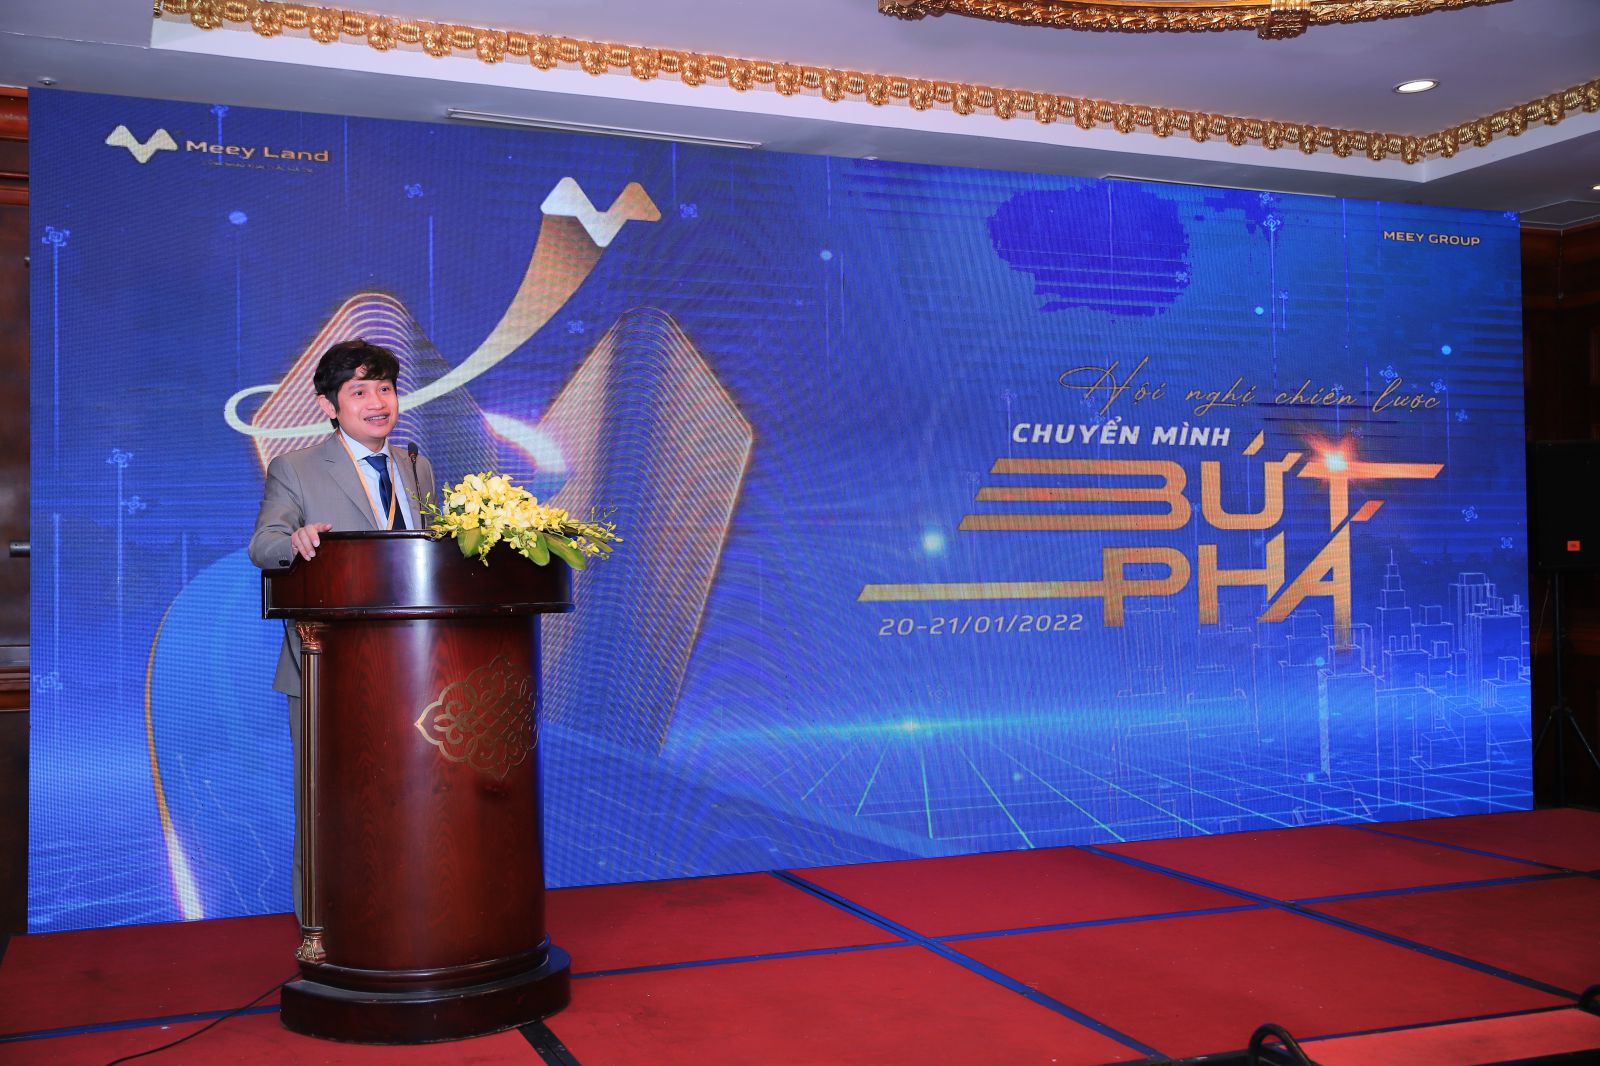 Ông Hoàng Mai Chung – Chủ tịch HĐQT Công ty CP Tập đoàn Meey Land khẳng định:p/“2022 sẽ là năm Meey Land đặt mục tiêu “Chuyển mình bứt phá”.